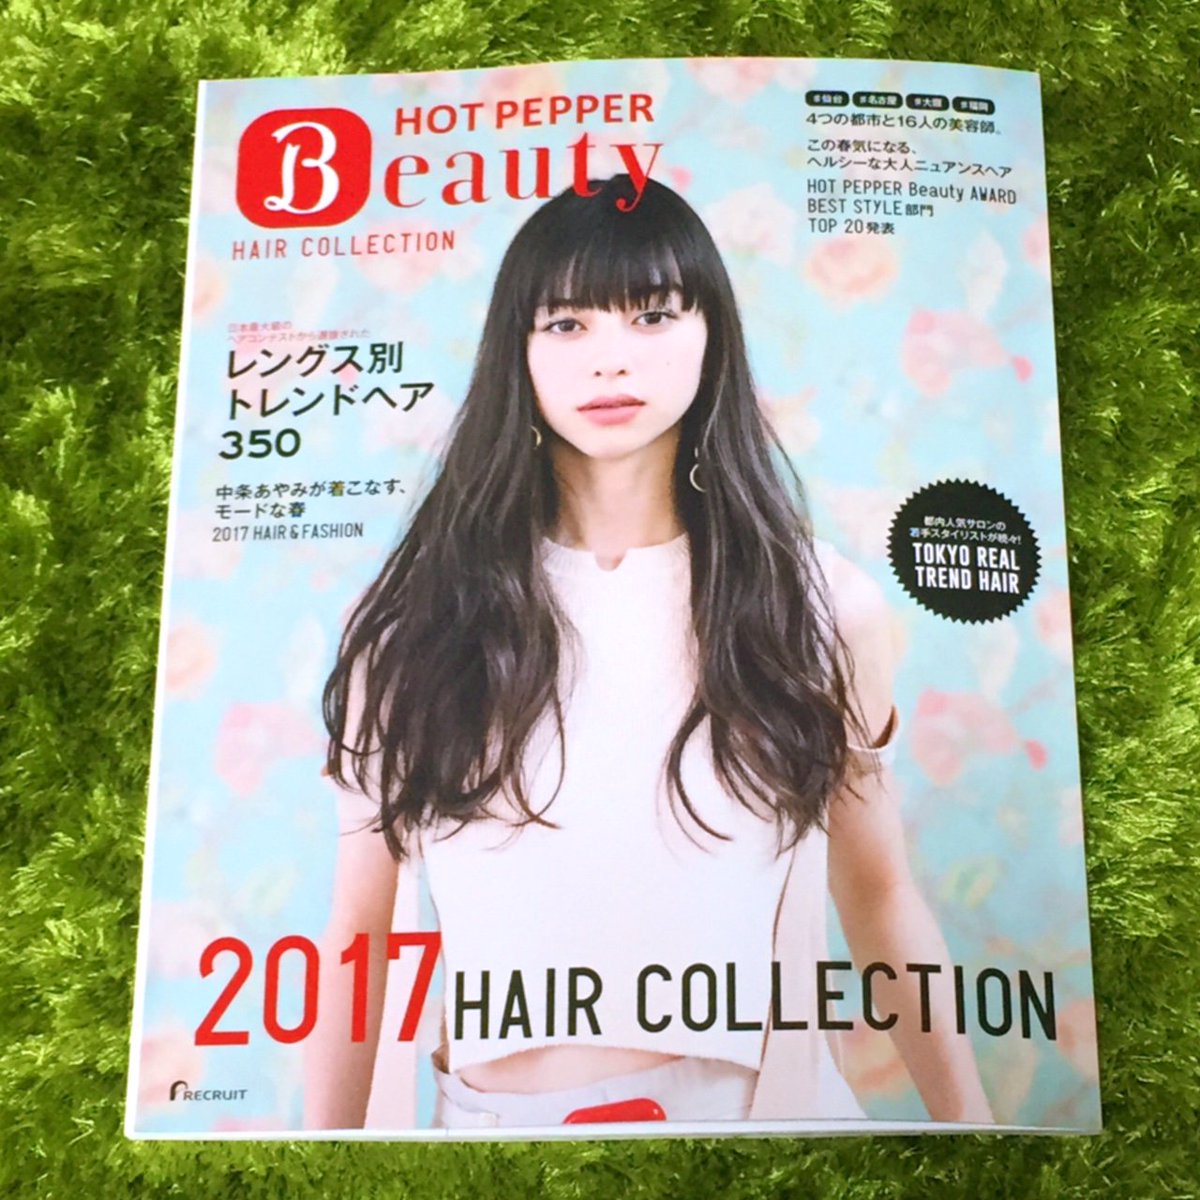 𝕡𝕒𝕚 お仕事 ホットペッパービューティー ヘアコレクション17にて 4つの都市と16人の美容師 の企画で仙台 名古屋 大阪 福岡の女の子を描かせて頂きました こちらの雑誌は販売されていないので お近くのサロンで是非見てみて下さい